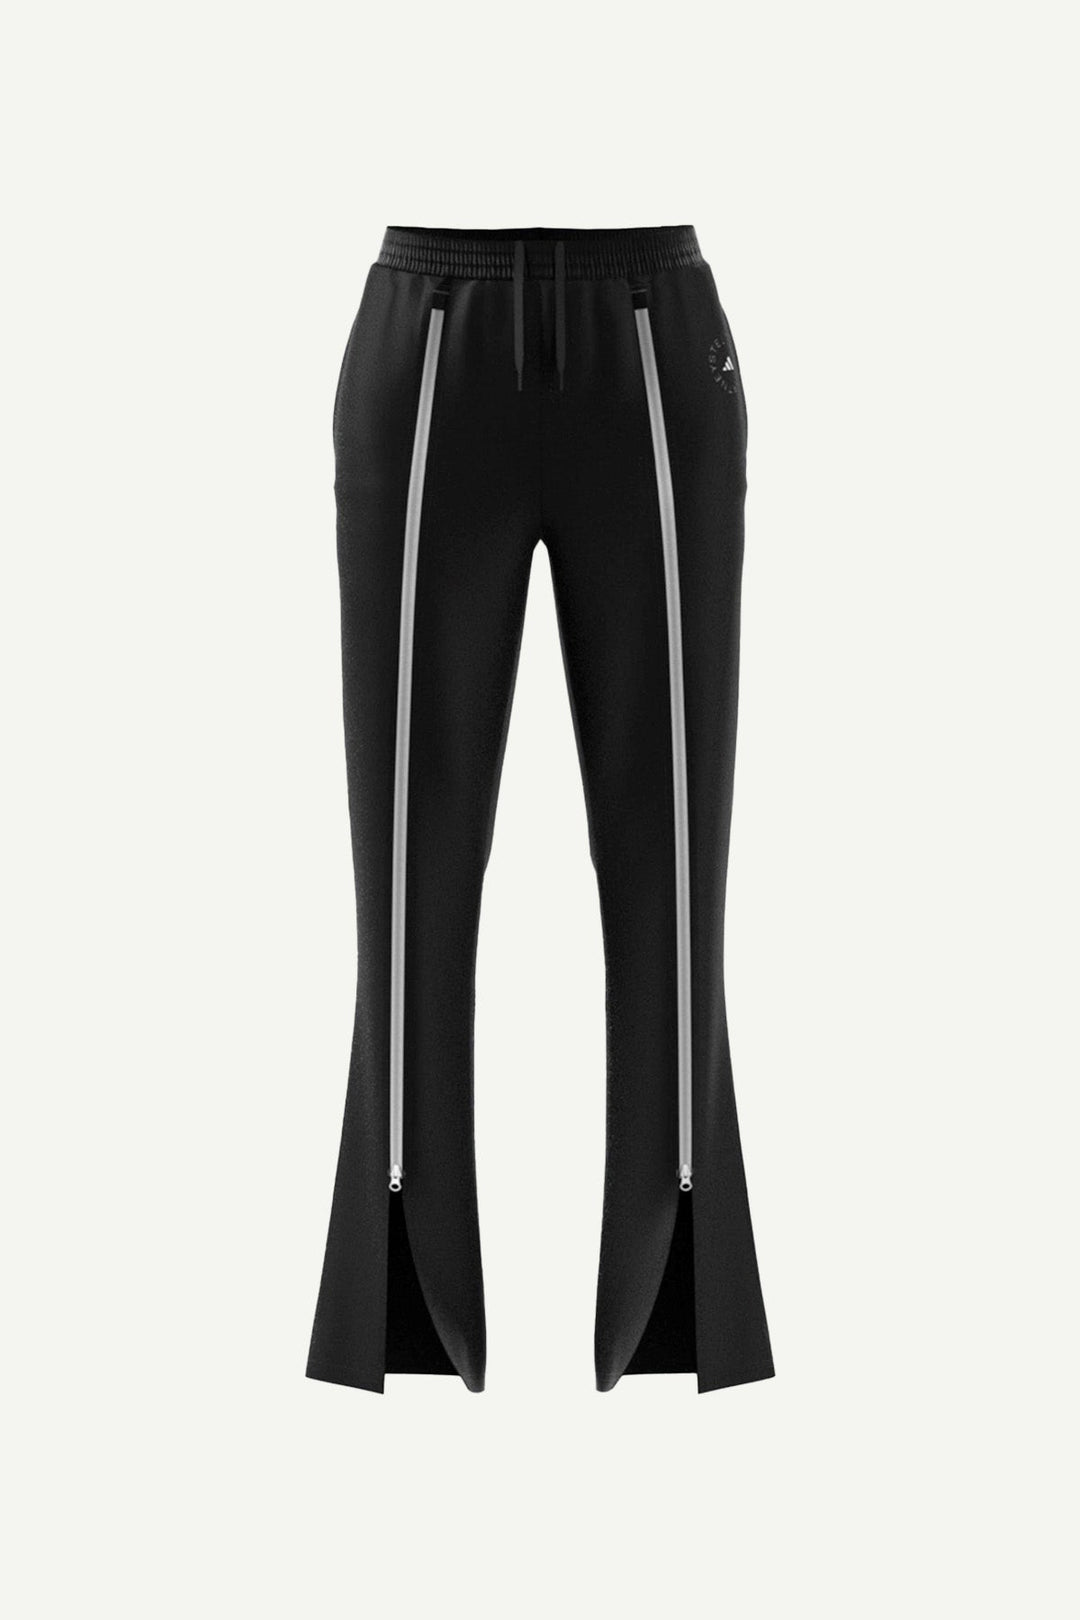 מכנסיים מתרחבים Asmc TR בצבע שחור - Adidas Stella